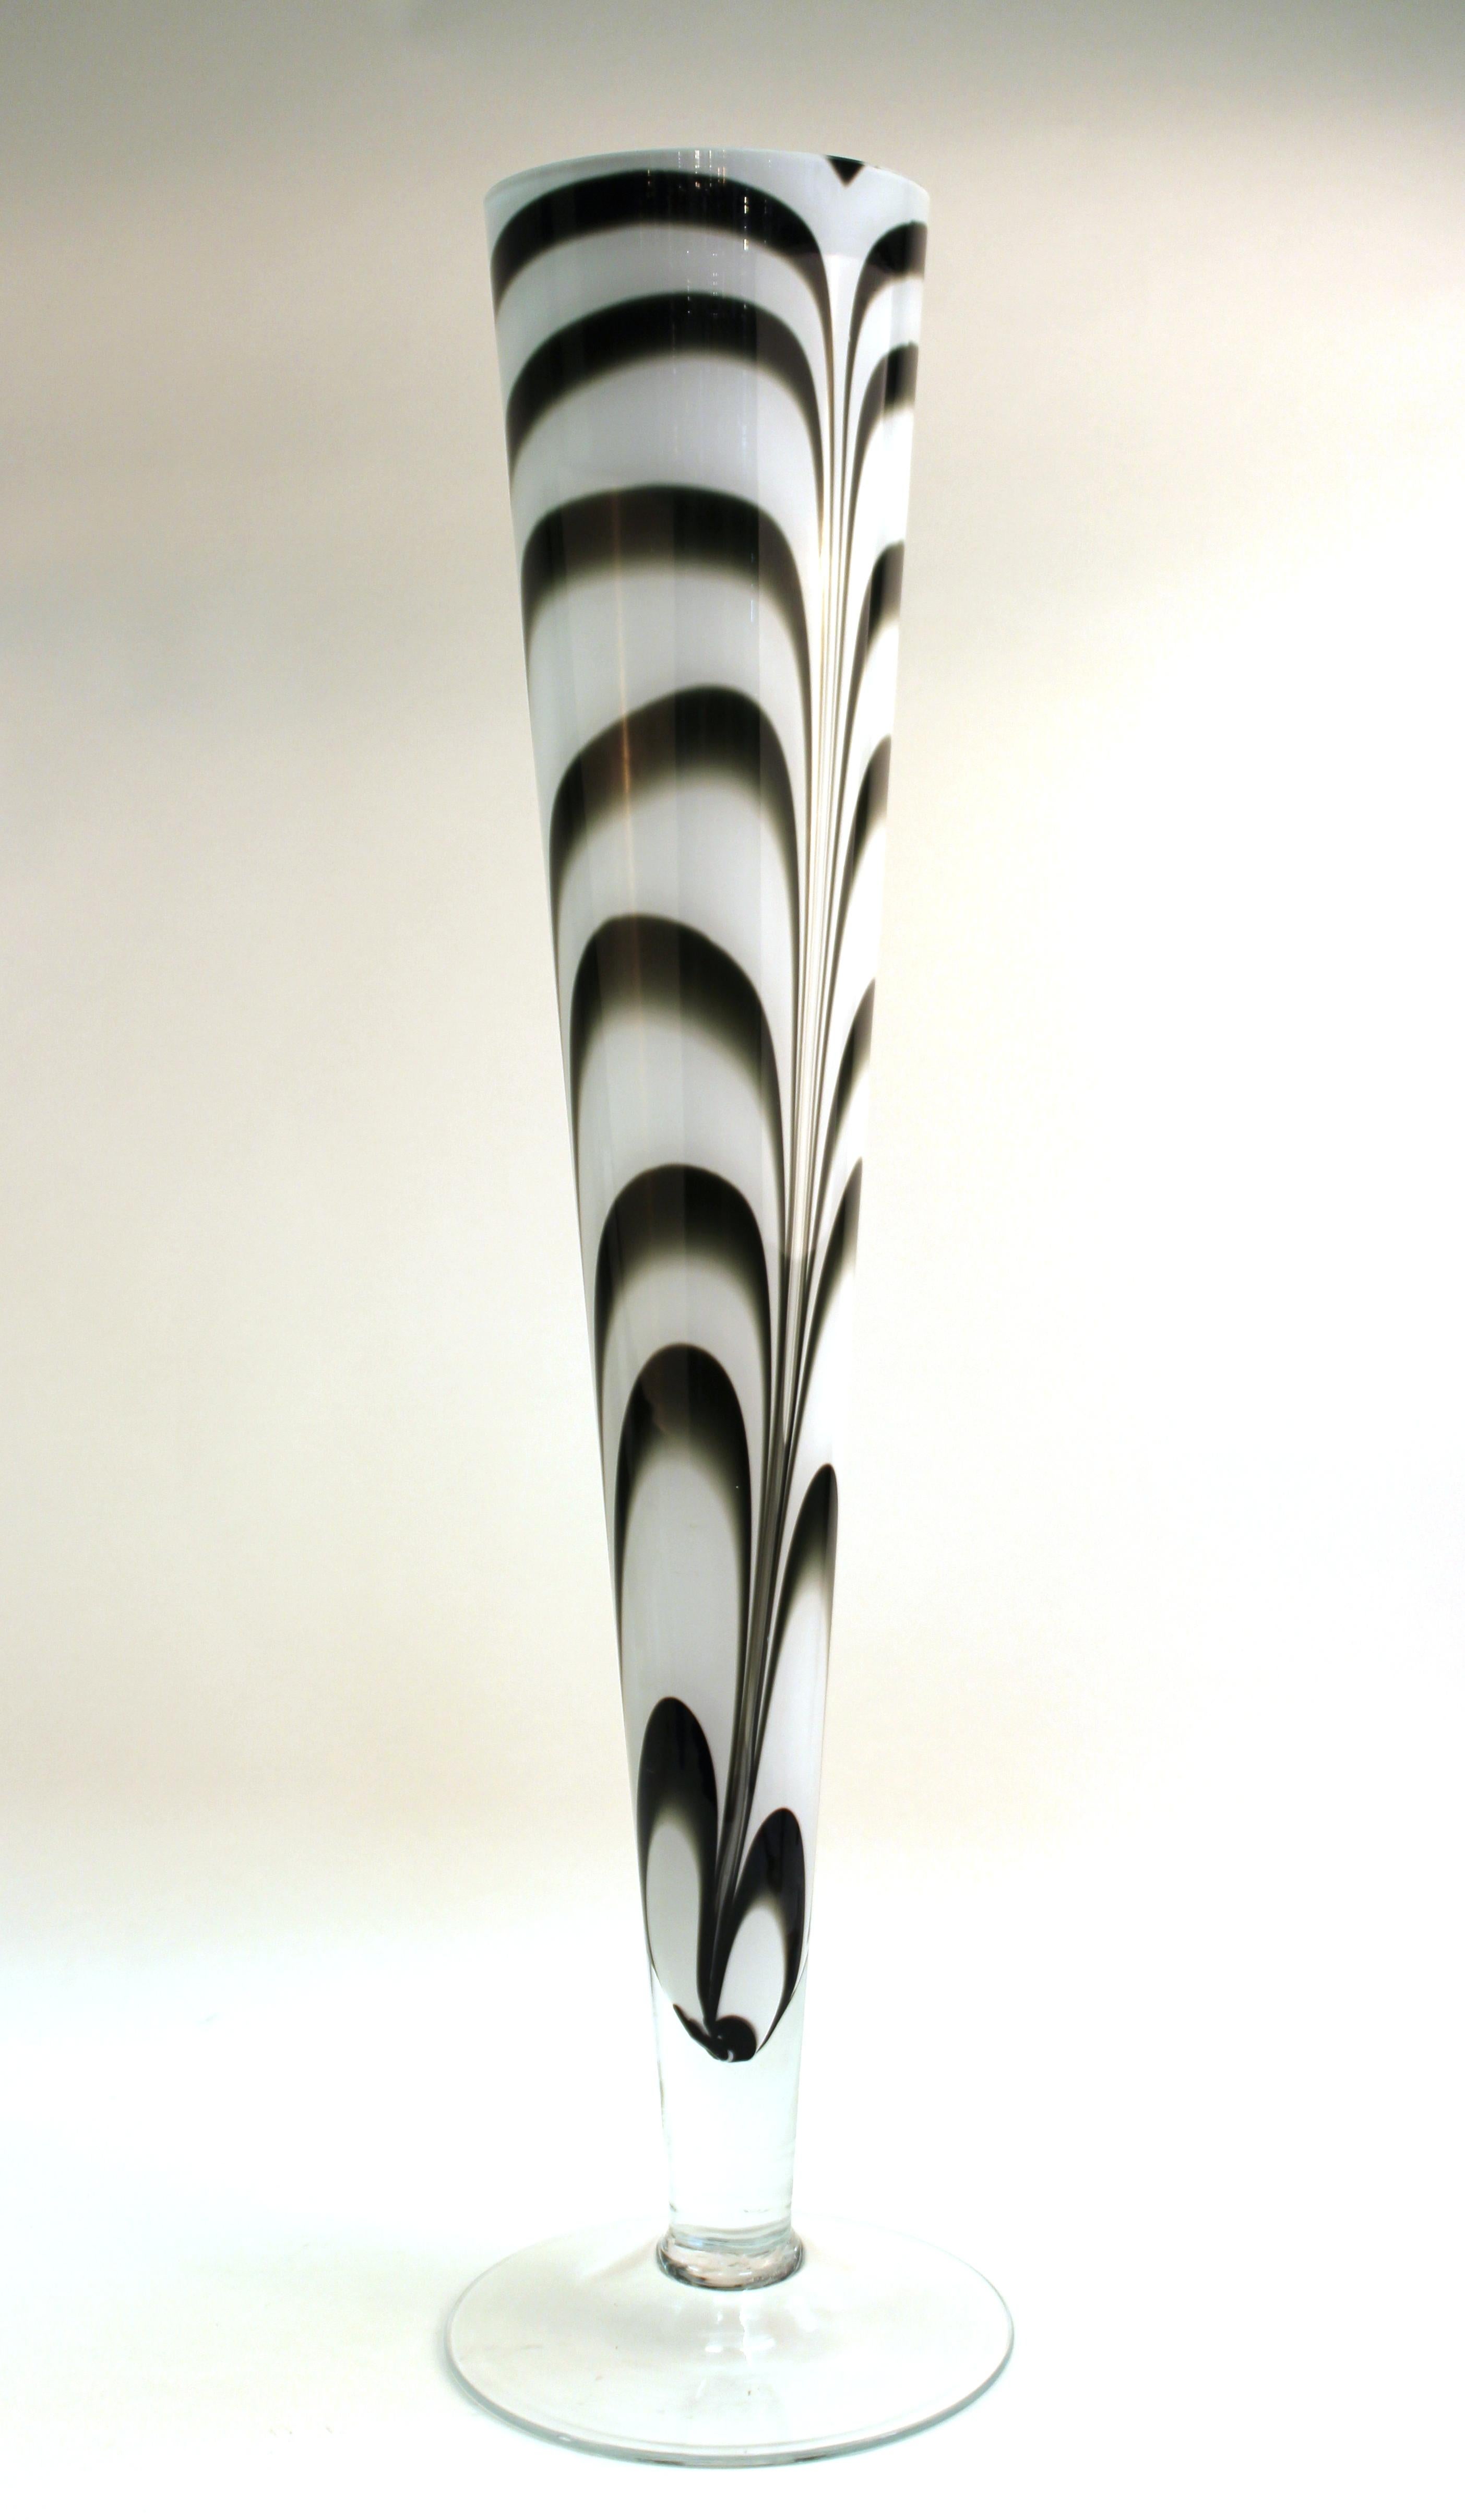 Vase d'art postmoderne de forme tubulaire surdimensionnée en verre plumeux blanc encastré dans du verre clair. La pièce peut être utilisée comme un vase de table monumental. En excellent état vintage avec une usure et une utilisation appropriées à